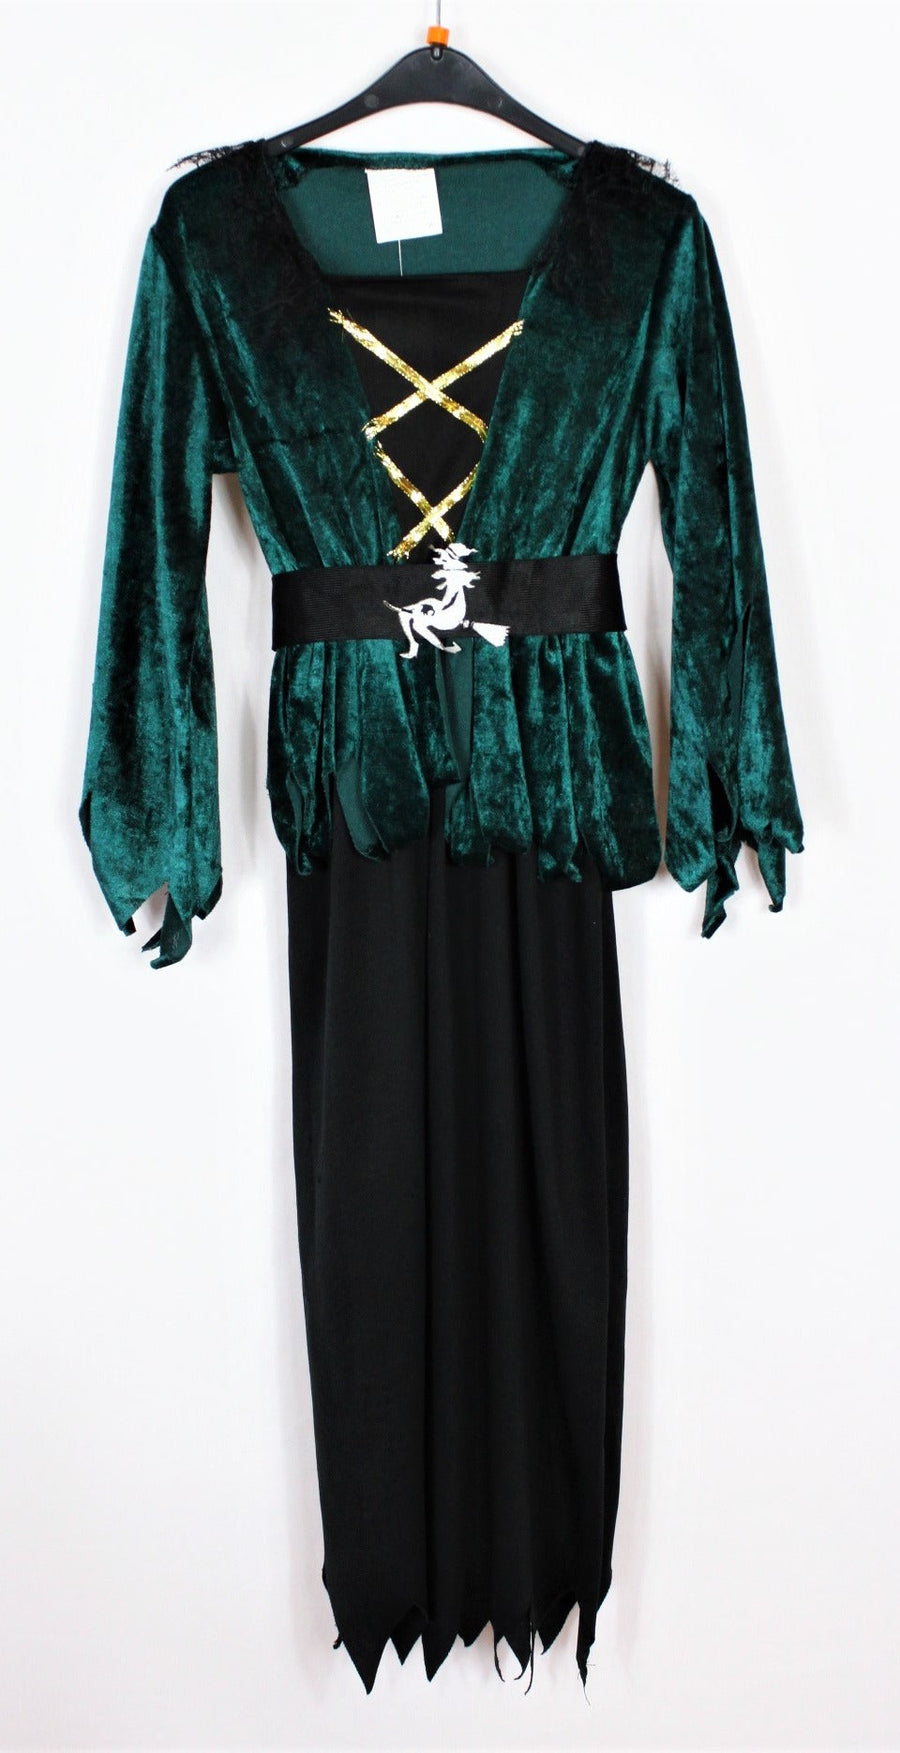 Kostüm - Hofdame - mit Hut - 110/116 - grün/schwarz